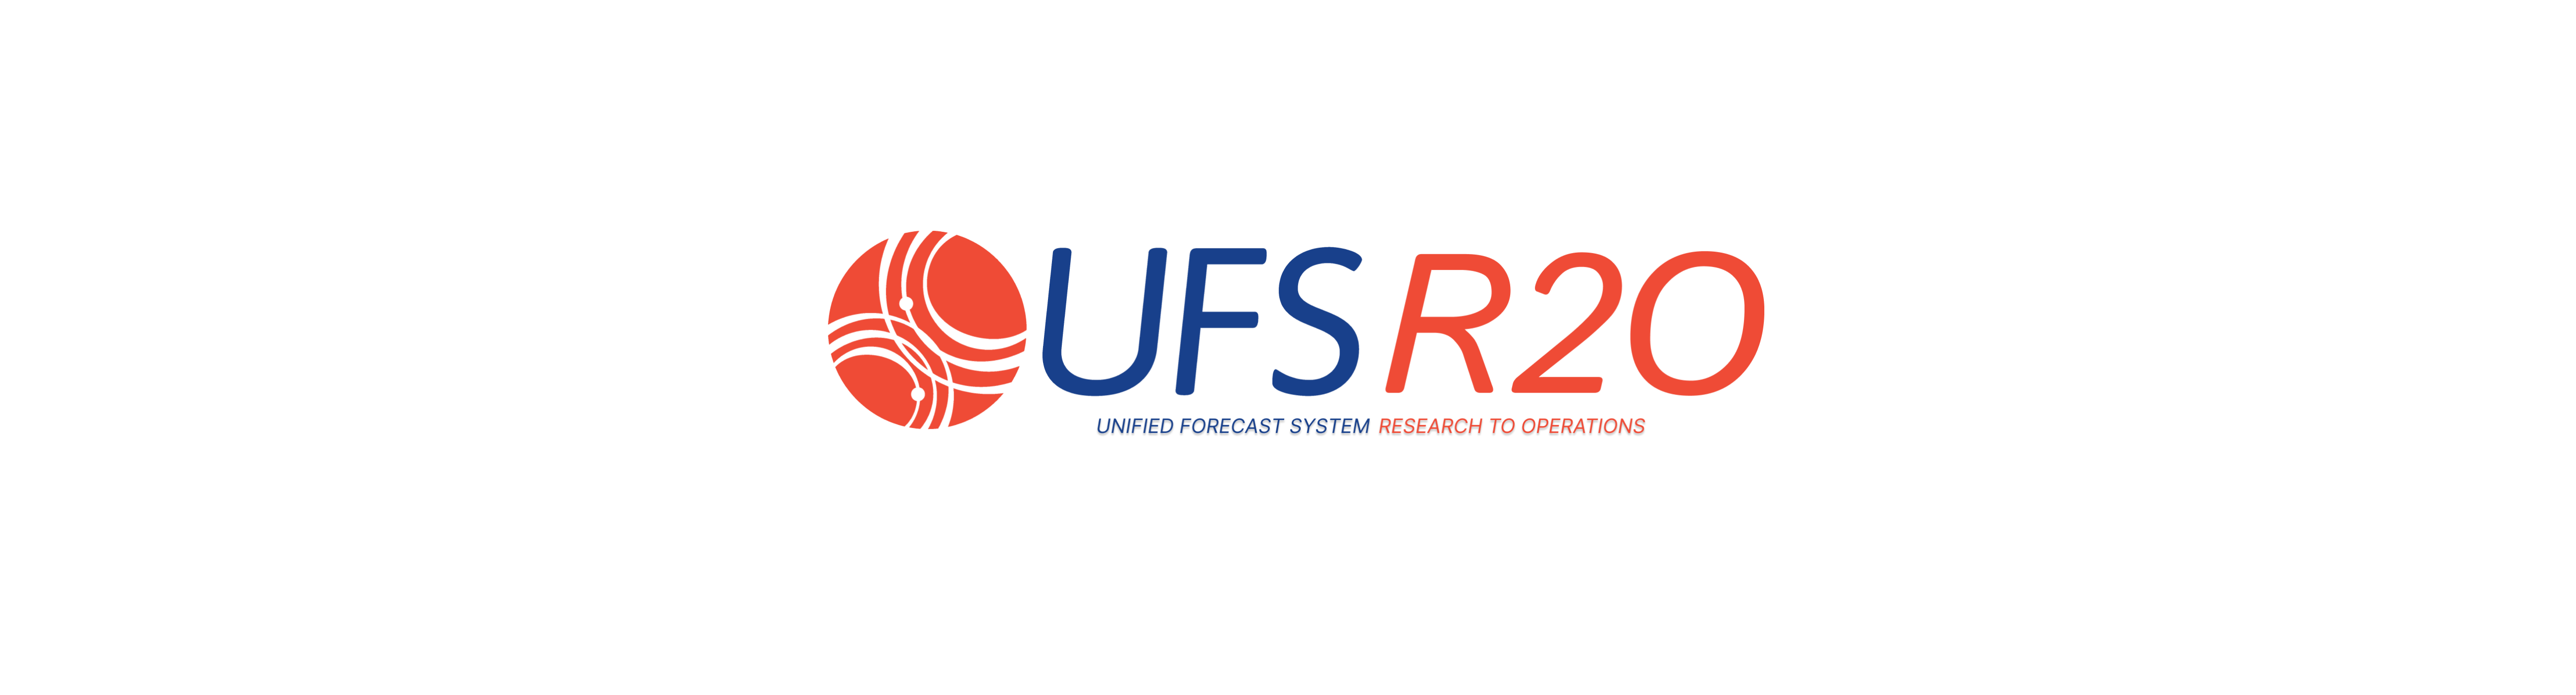 UFS R2O Logo